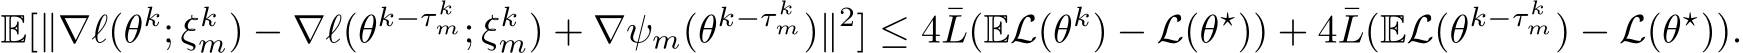 E[∥∇ℓ(θk; ξkm) − ∇ℓ(θk−τ km; ξkm) + ∇ψm(θk−τ km)∥2] ≤ 4¯L(EL(θk) − L(θ⋆)) + 4¯L(EL(θk−τ km) − L(θ⋆)).